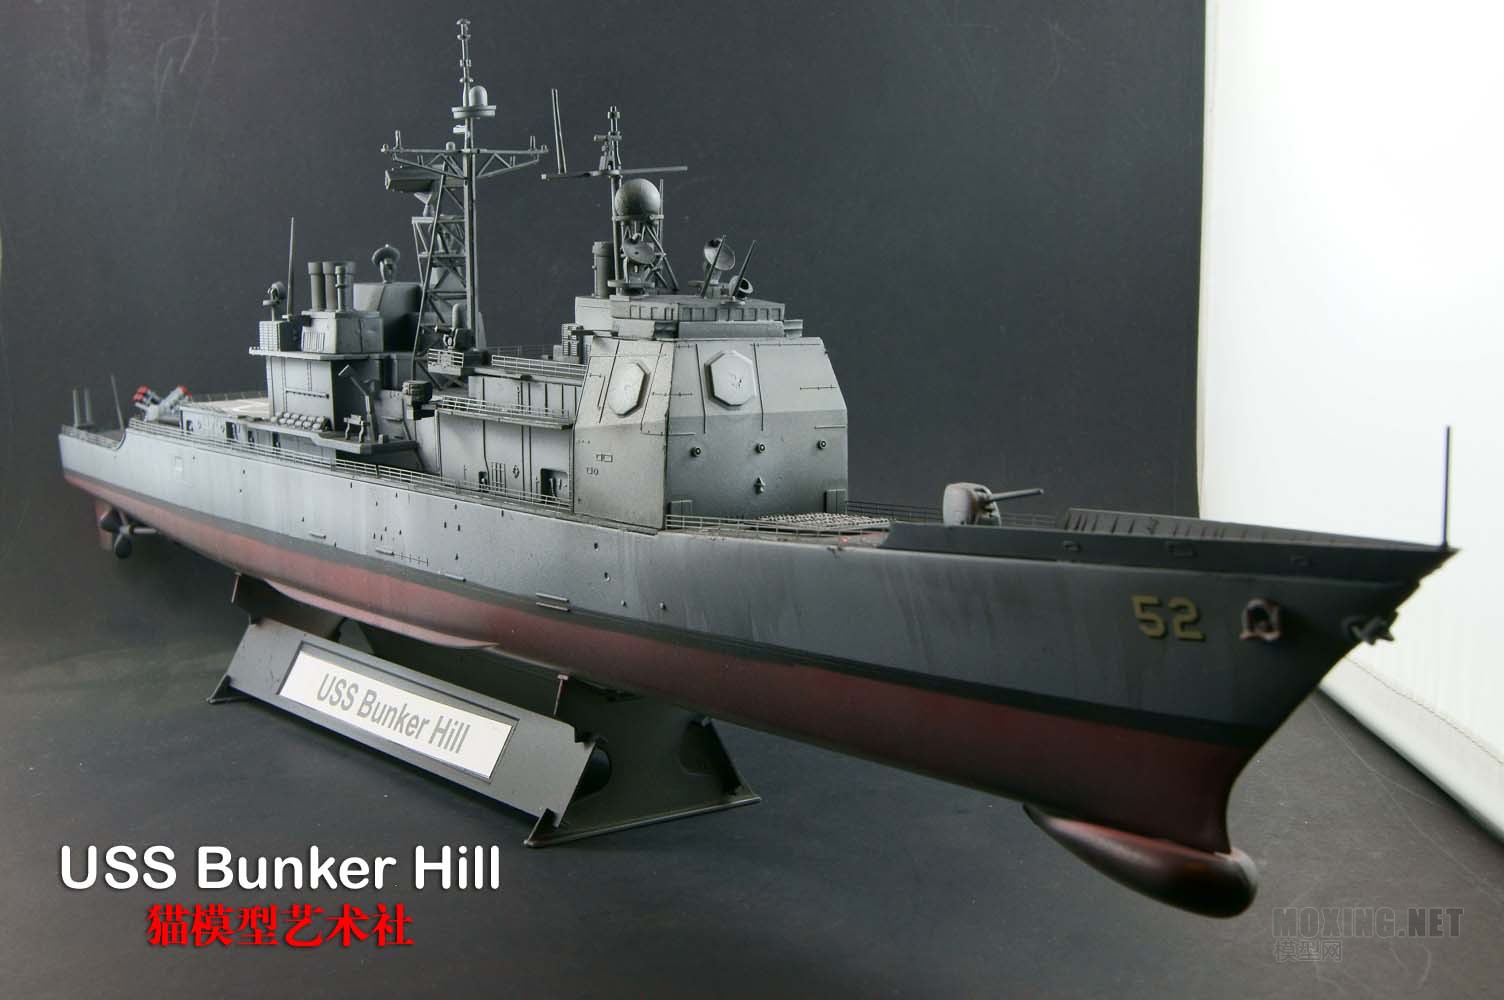 三角号手-邦克山号巡洋舰 - 舰船模型展示区 - 模型网